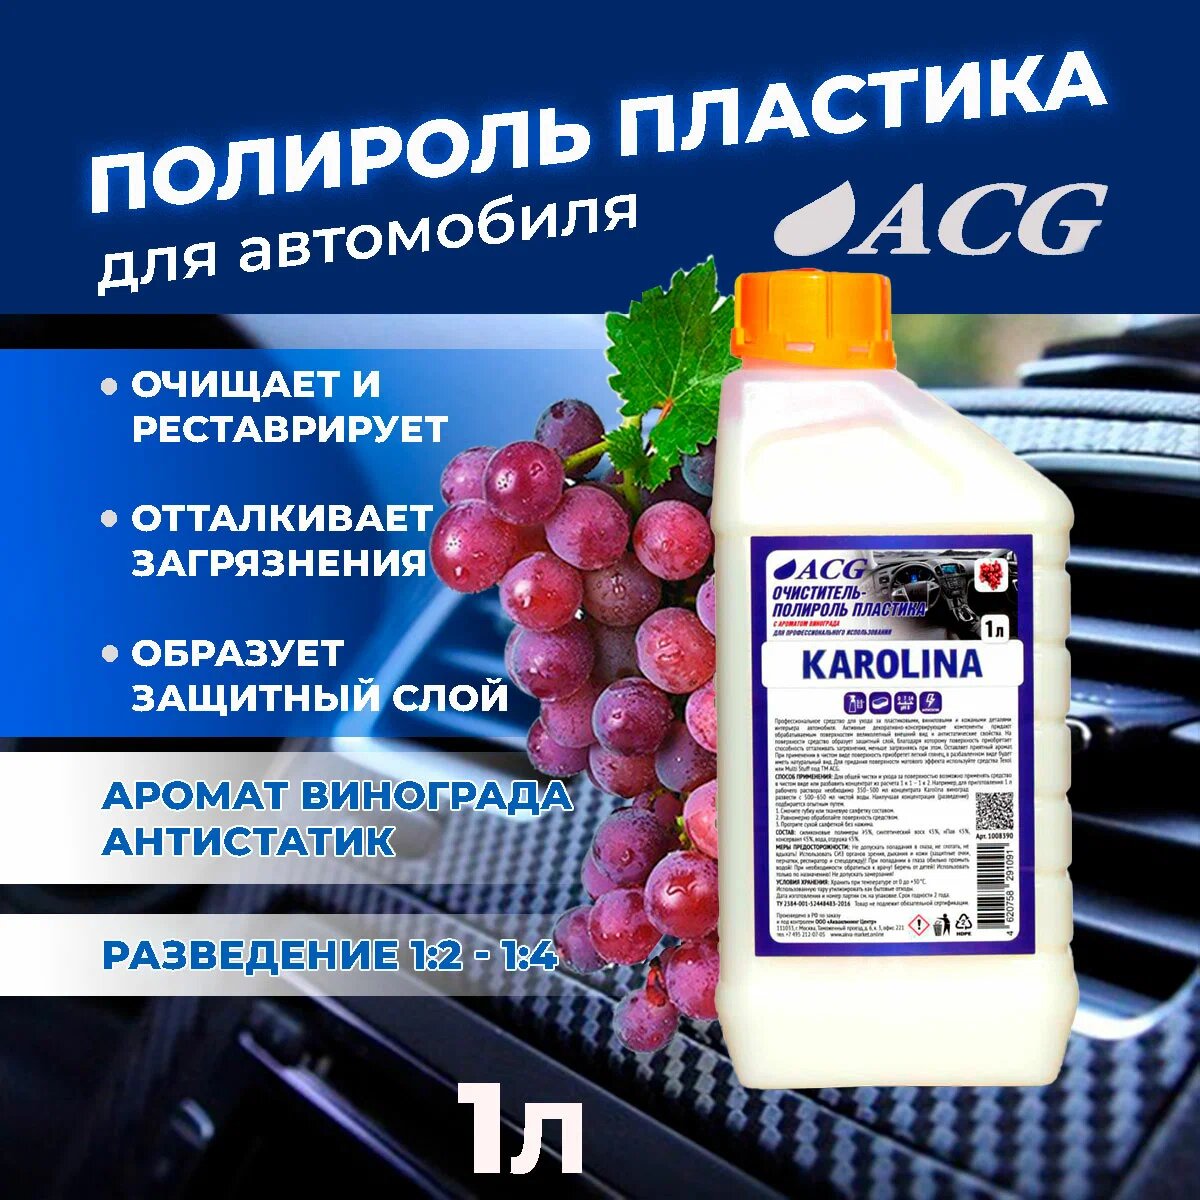 Полироль и очиститель внутрисалонного пластика KAROLINA ACG аромат "Виноград" 1 литр